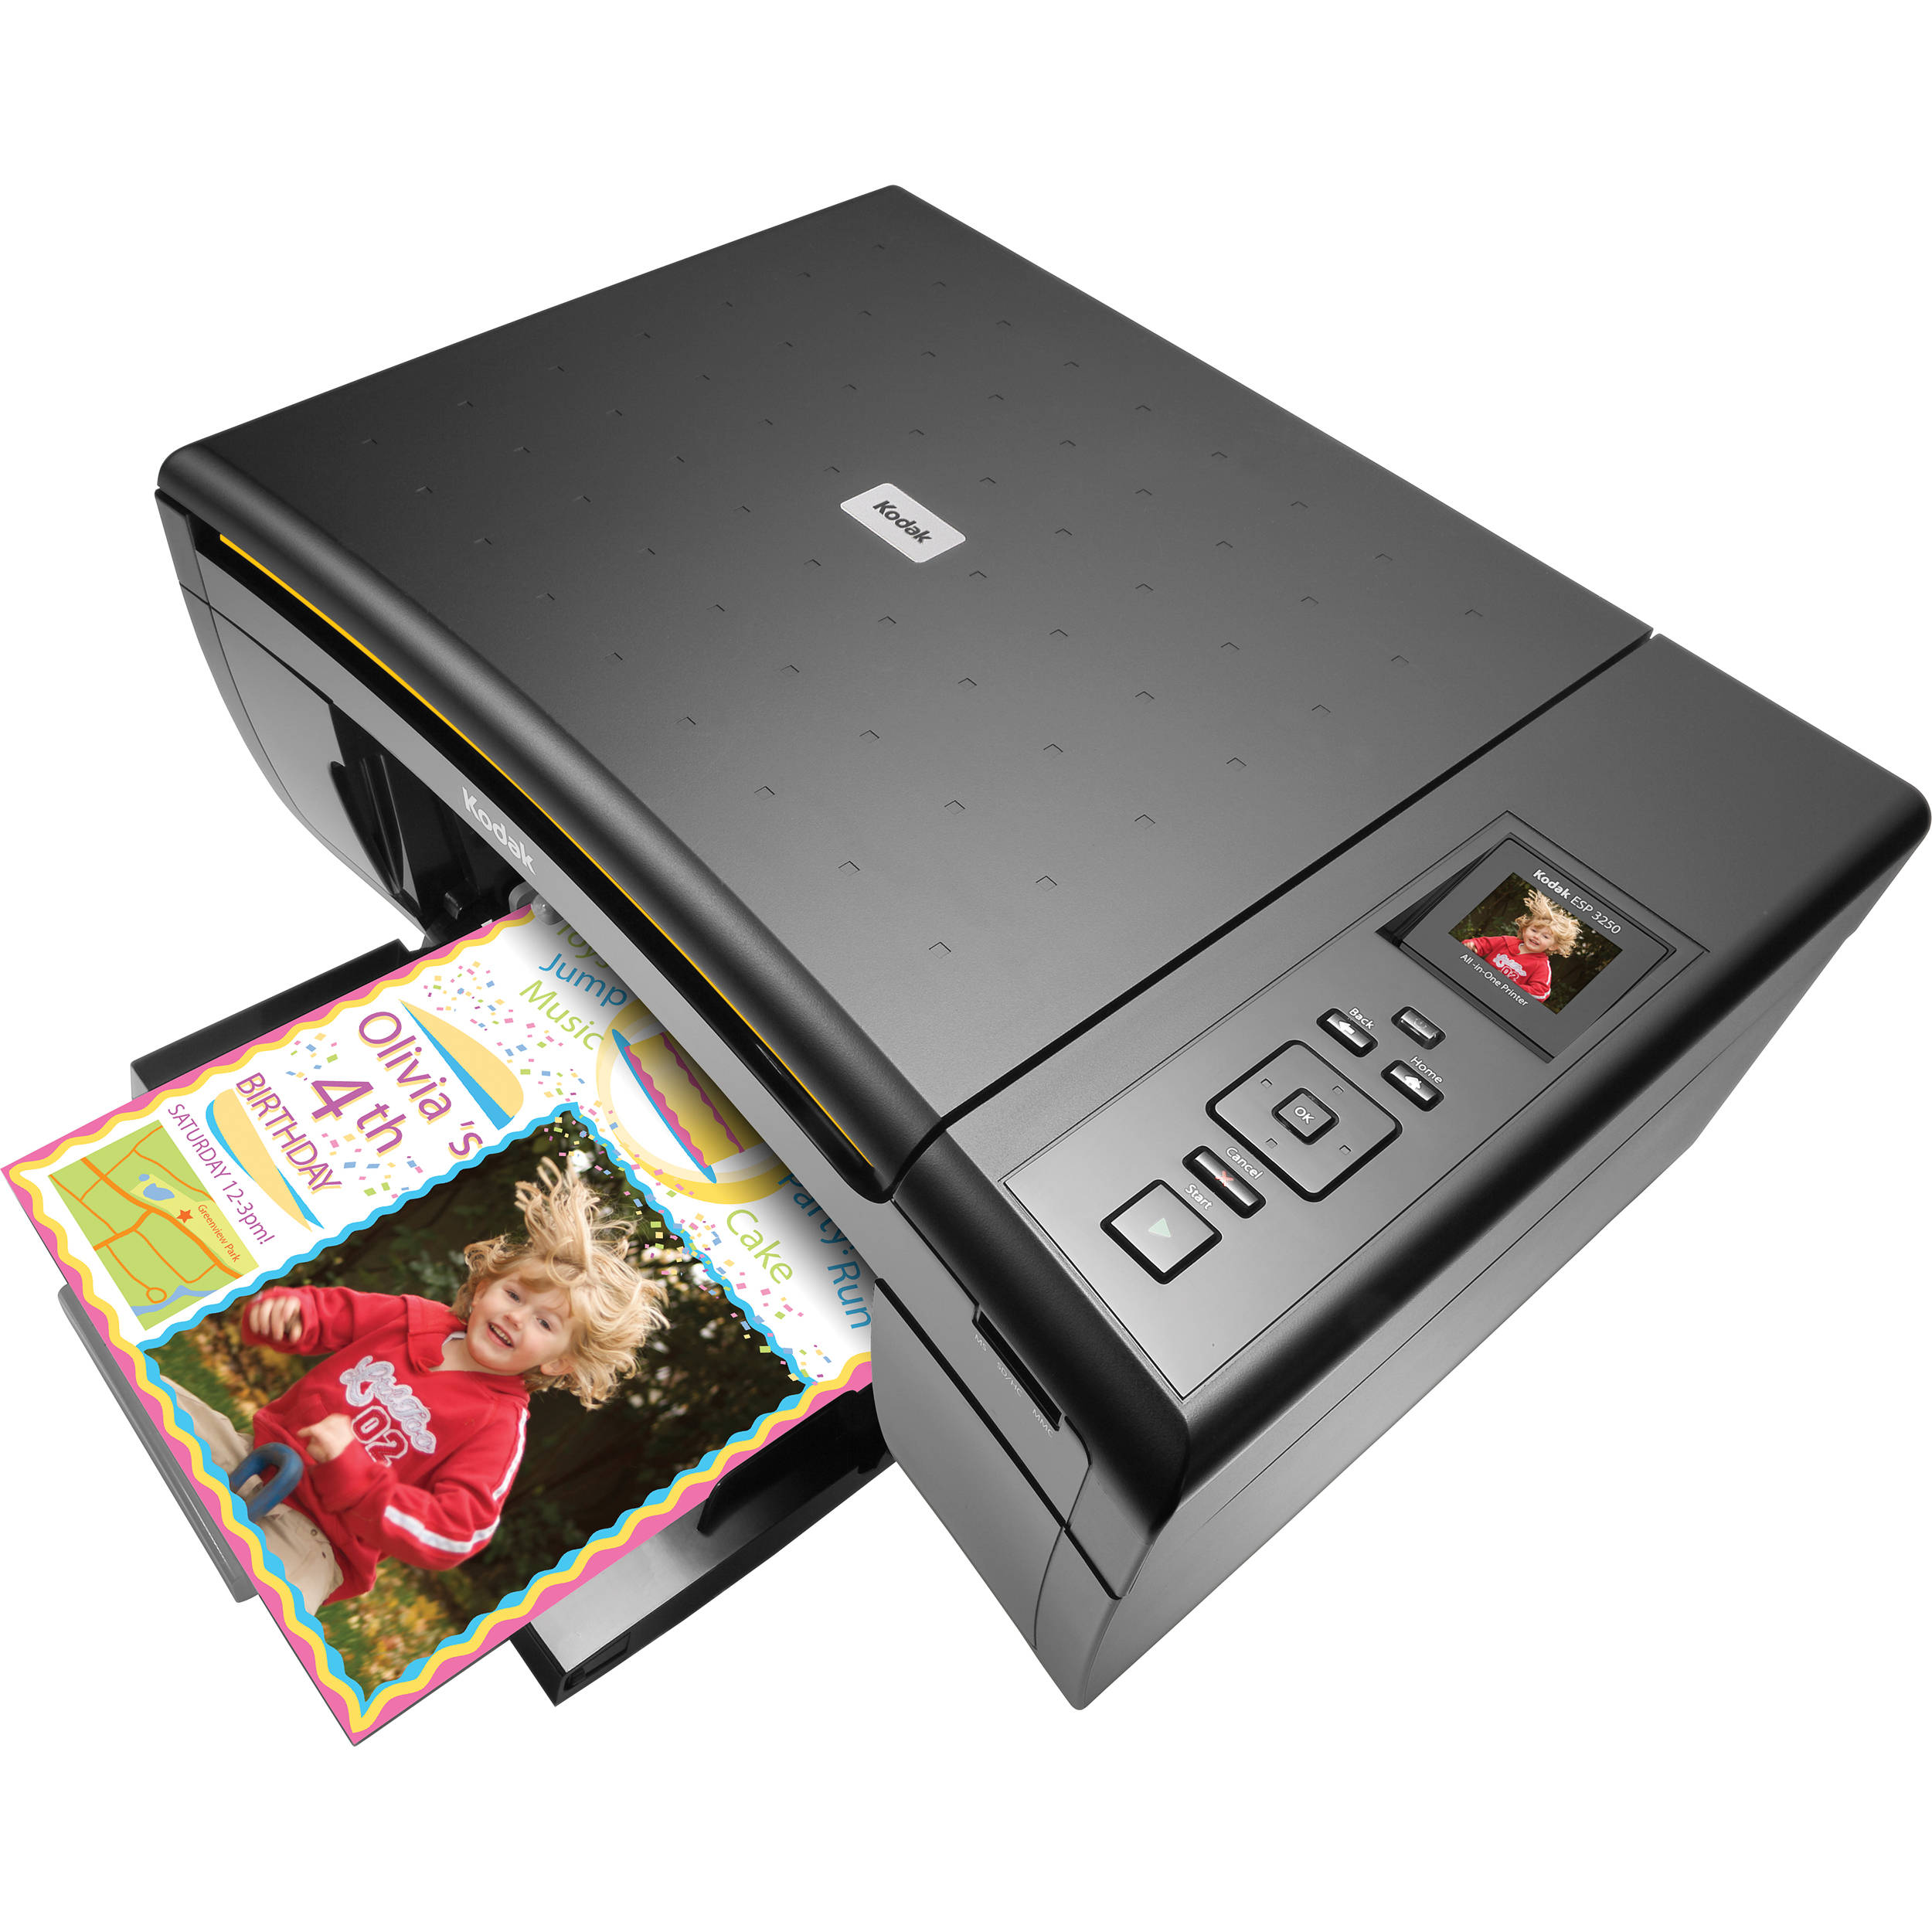 Kodak esp 5250 printer software for mac free